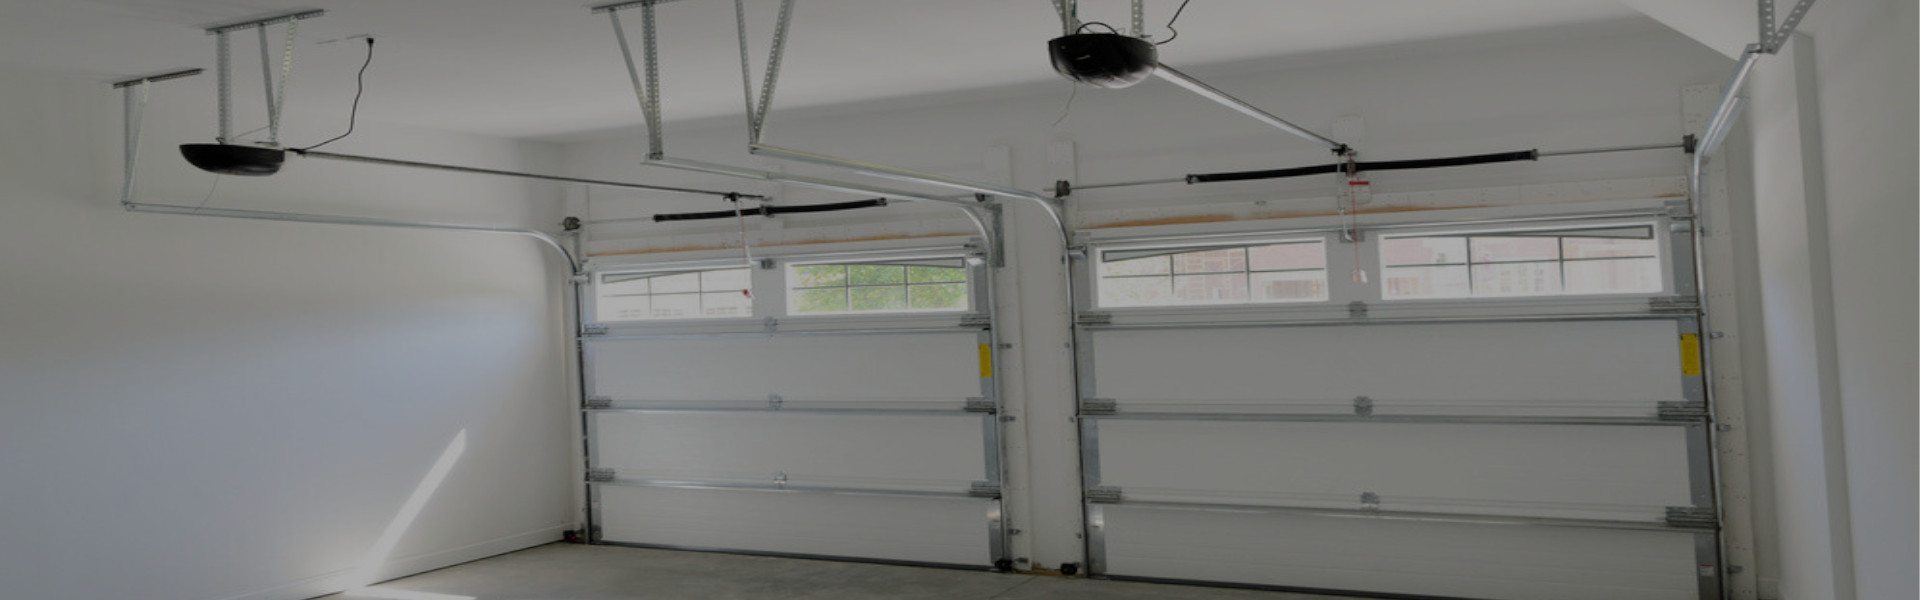 Slider Garage Door Repair, Glaziers in North Finchley, Woodside Park, N12